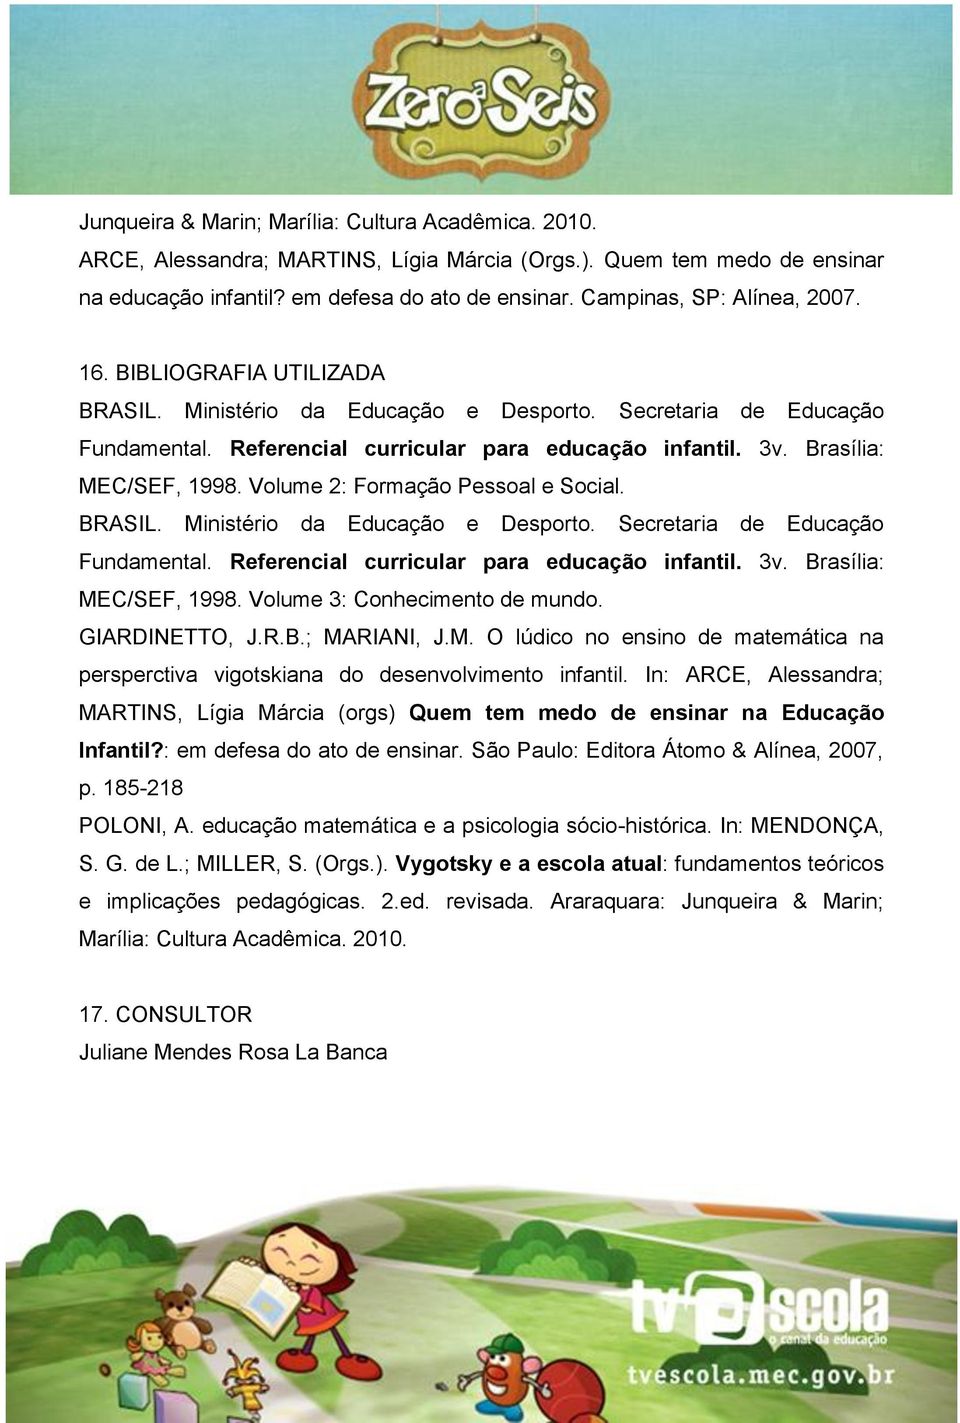 Brasília: MEC/SEF, 1998. Volume 2: Formação Pessoal e Social. BRASIL. Ministério da Educação e Desporto. Secretaria de Educação Fundamental. Referencial curricular para educação infantil. 3v.